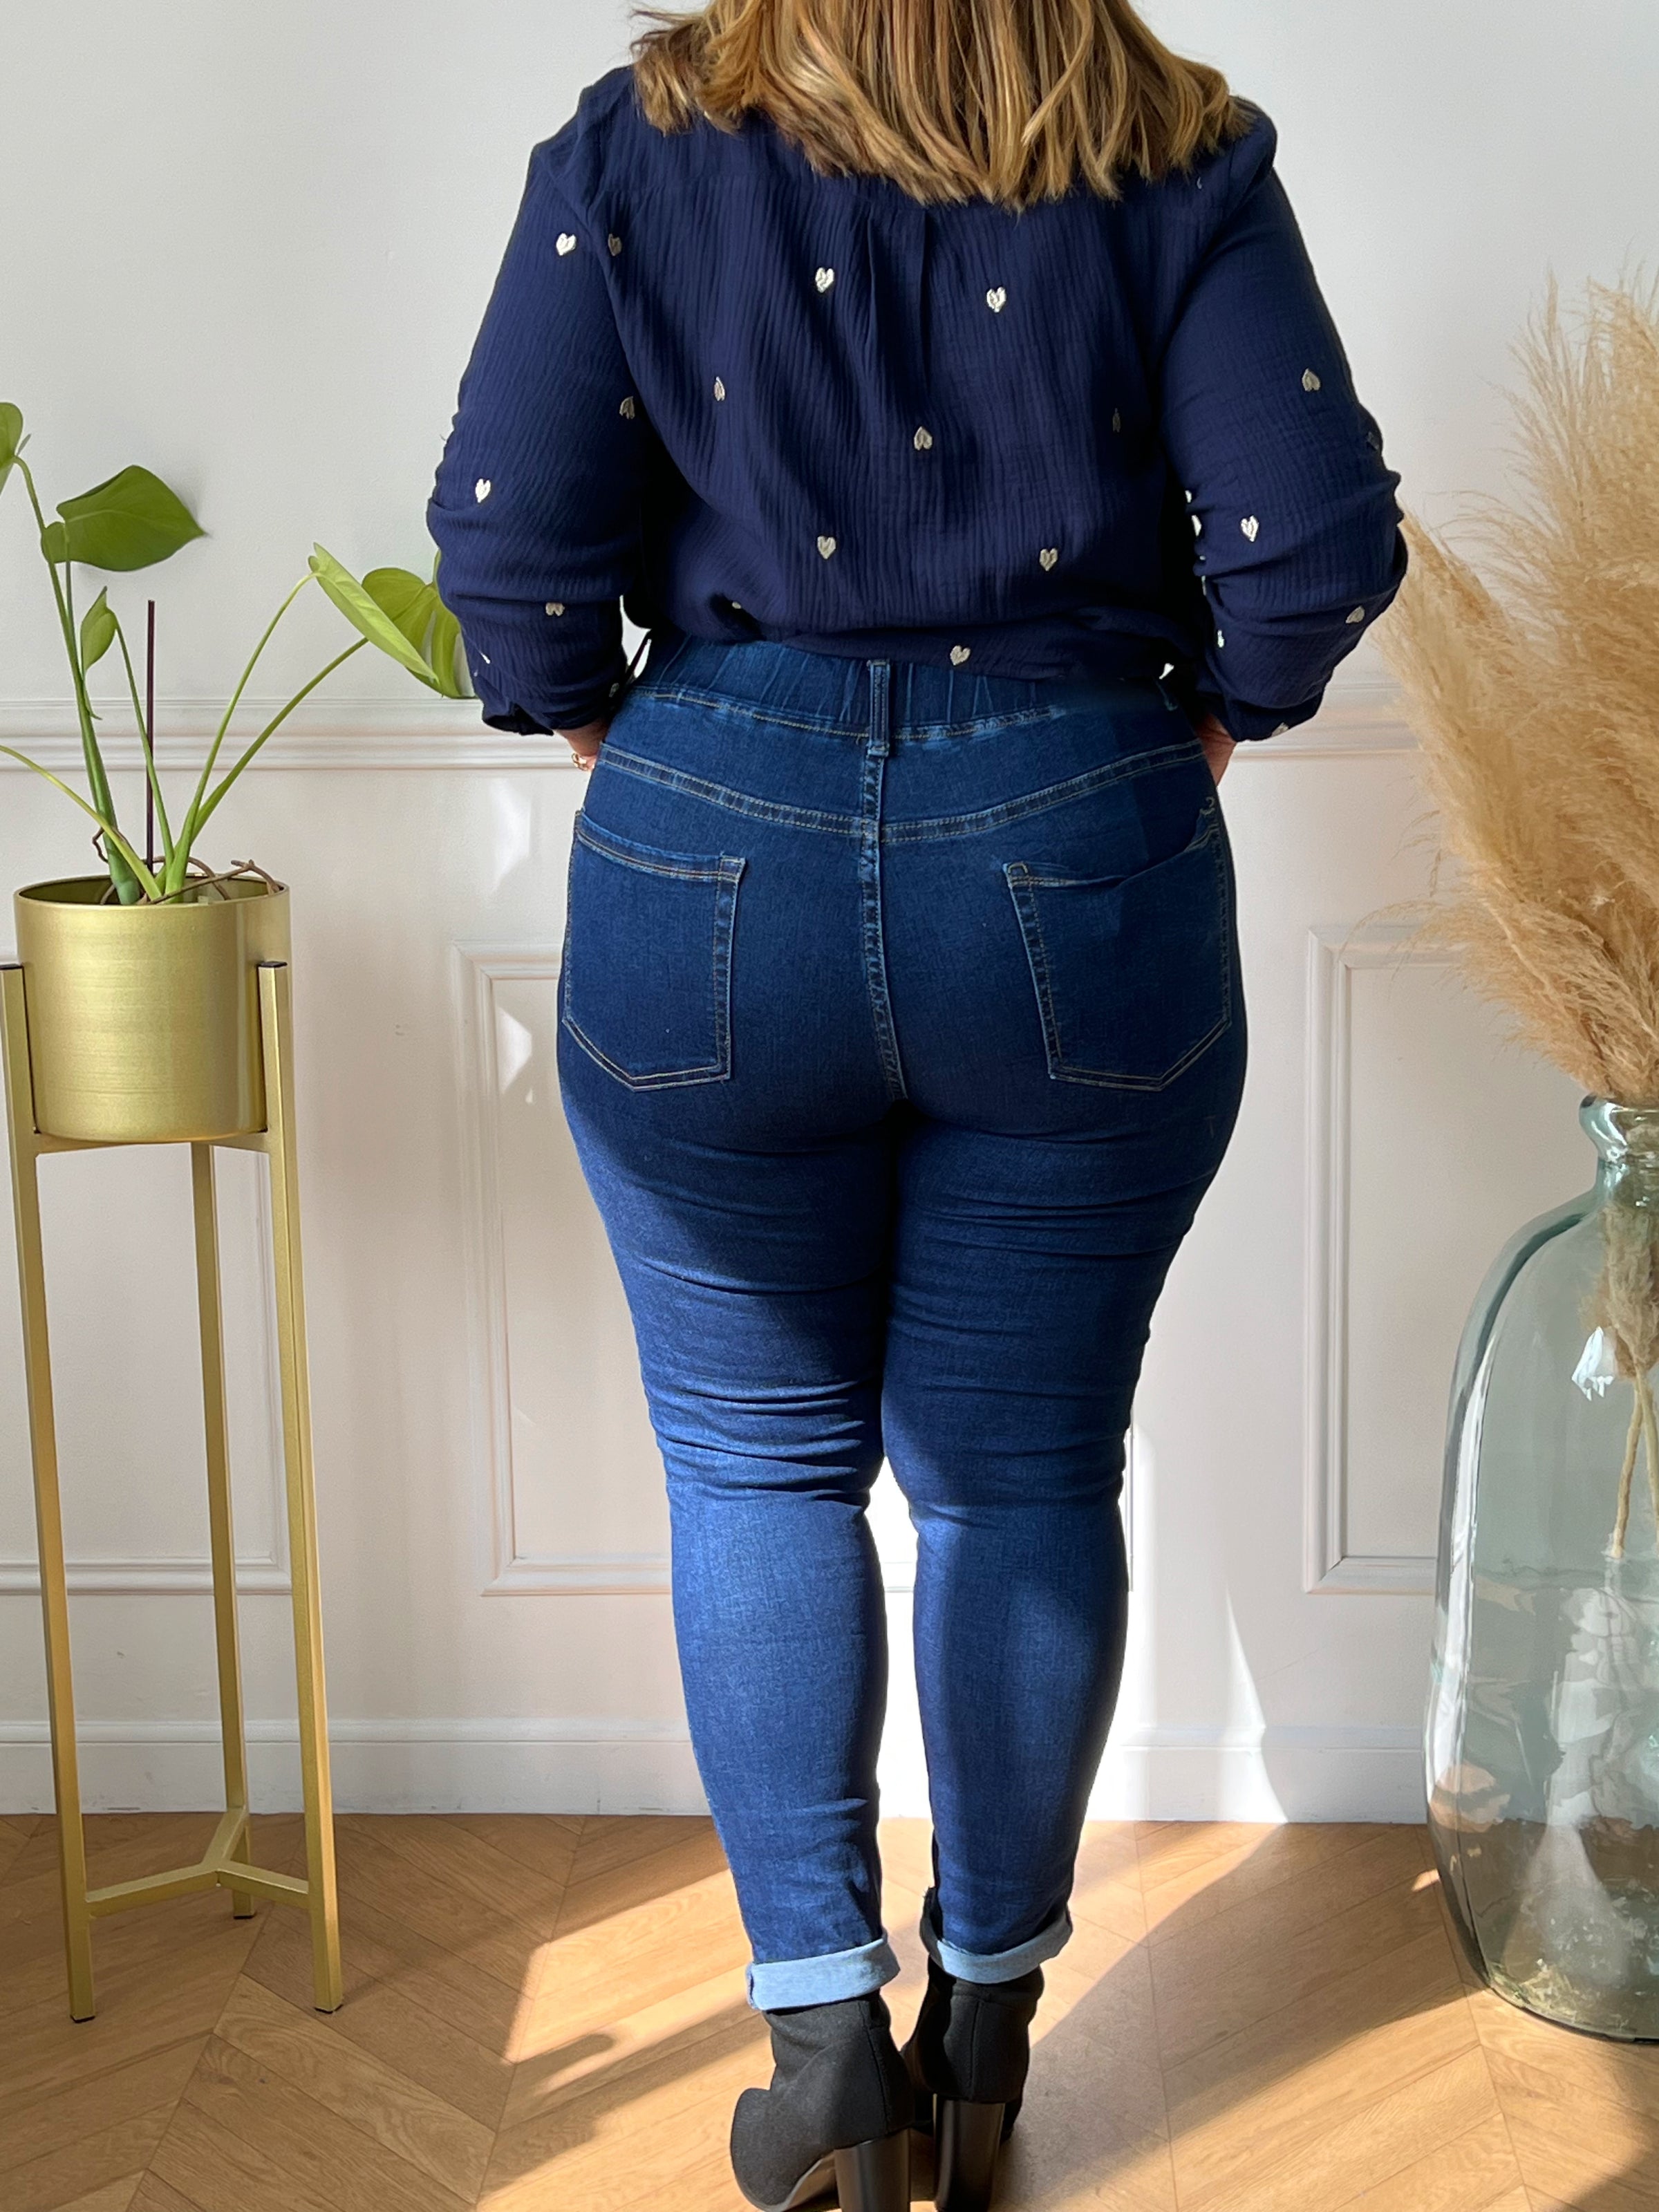 Pantalon femme grande taille couleur jean foncé.